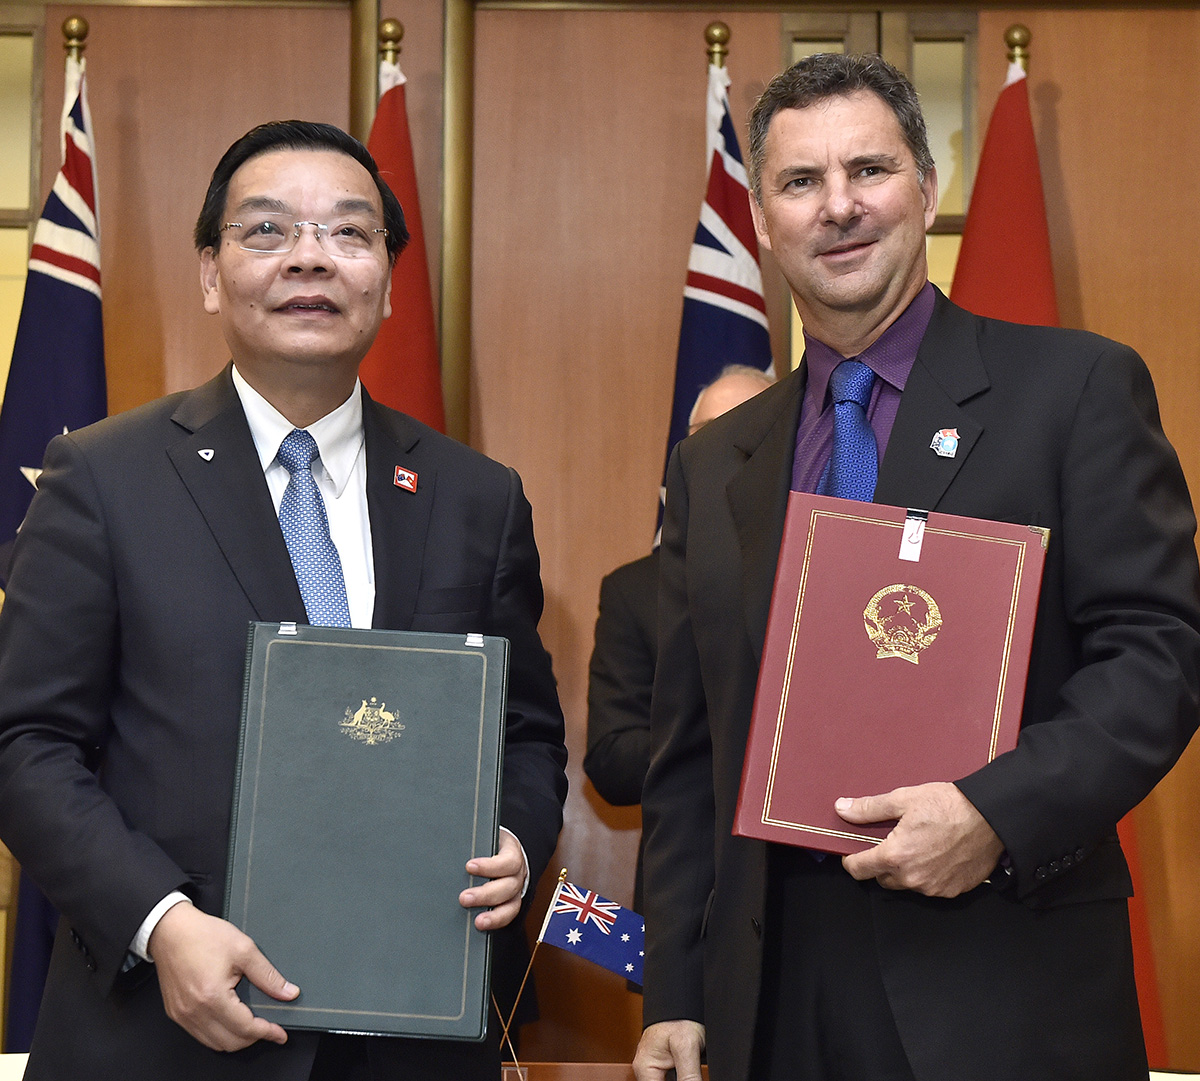 CSIRO và Bộ Khoa học và Công nghệ Việt Nam (MOST) đã ký Biên Bản Ghi Nhớ thiết lập quan hệ hợp tác, đặt nền móng vững chắc cho việc hợp tác lâu dài về khoa học, công nghệ và đổi mới sáng tạo, qua đó tận dụng tối đa các cơ hội mà cuộc Cách mạng Công nghiệp 4.0 mang lại. Biên bản ghi nhớ này đã được ký nhân chuyến viếng thăm Australia của Thủ tướng Việt Nam Nguyễn Xuân Phúc vào tháng 3 năm 2018.